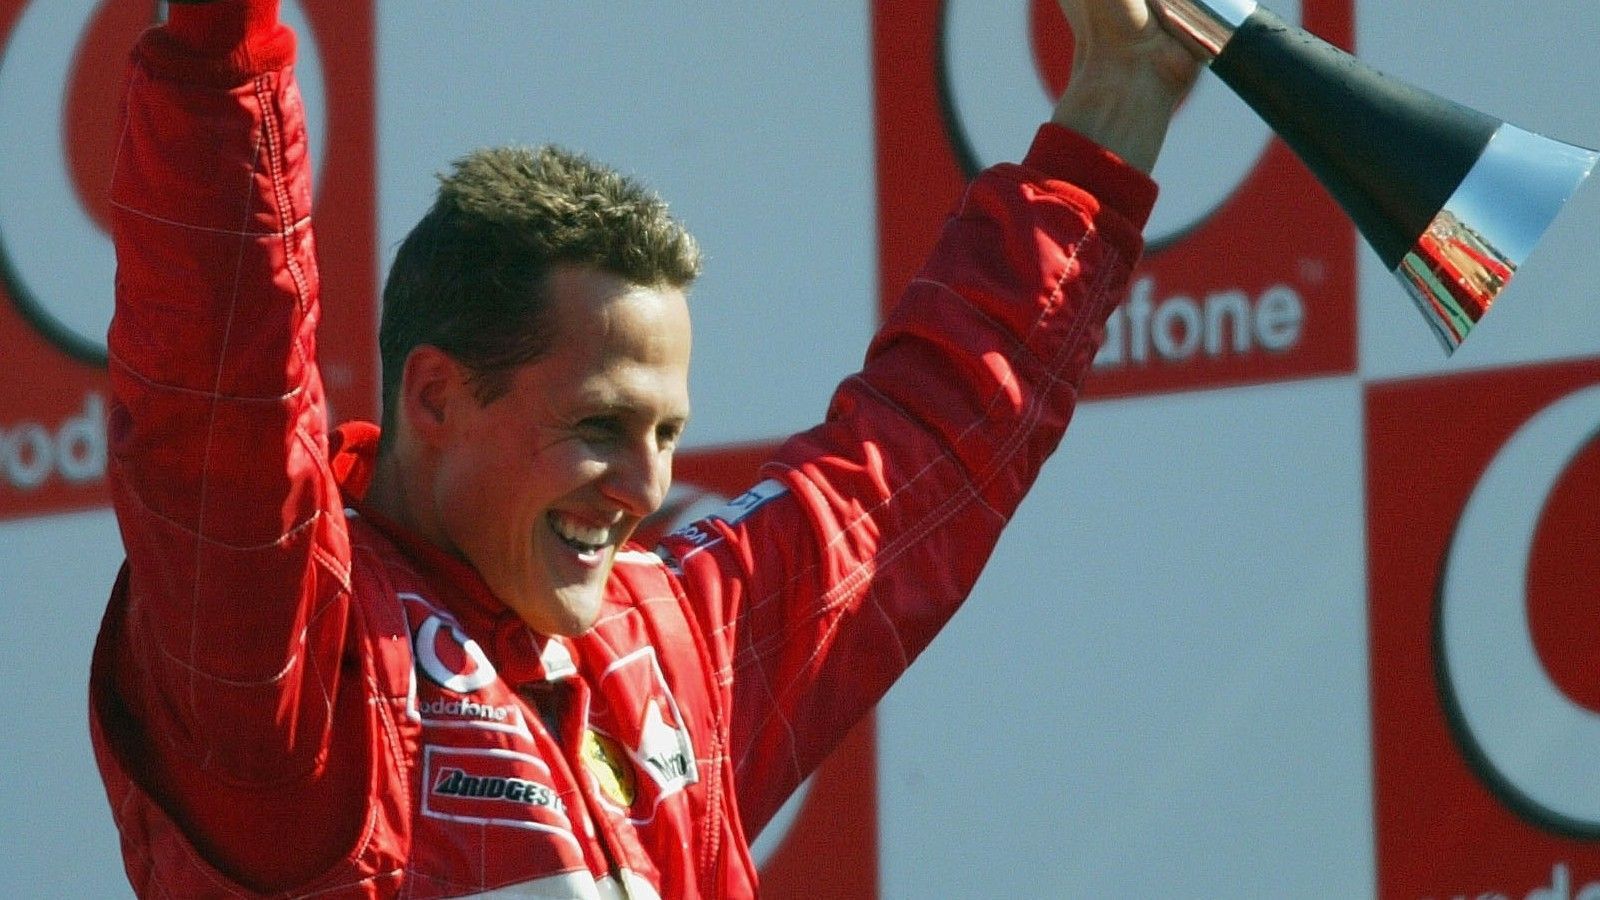 
                <strong>Italien-GP 2003</strong><br>
                Der Große Preis von Italien ist alleine aufgrund seiner Durchschnittsgeschwindigkeit der kürzeste im Rennkalender. 2003 dauerte der Grand Prix im Autodromo in Monza nur knapp 75 Minuten. Damit ist er das kürzeste Rennen, bei dem keine rote Flagge gezeigt werden musste. Passend zum Austragungsort siegte seinerzeit übrigens Michael Schumacher im Ferrari.
              